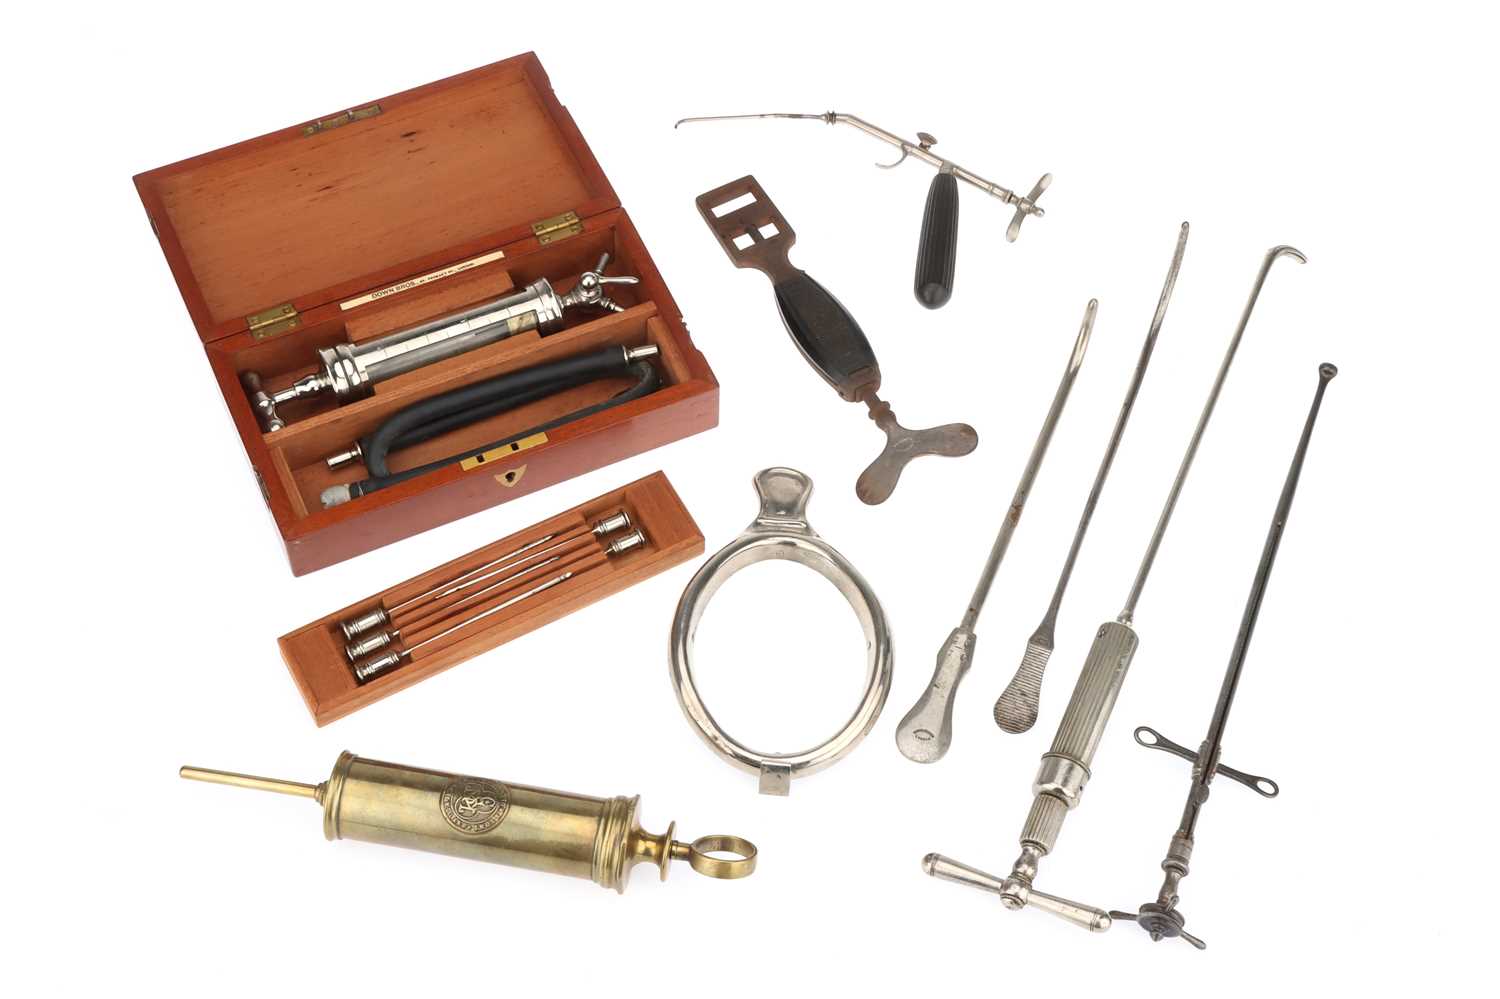 Lot 739 - Antique Surgical Instruments